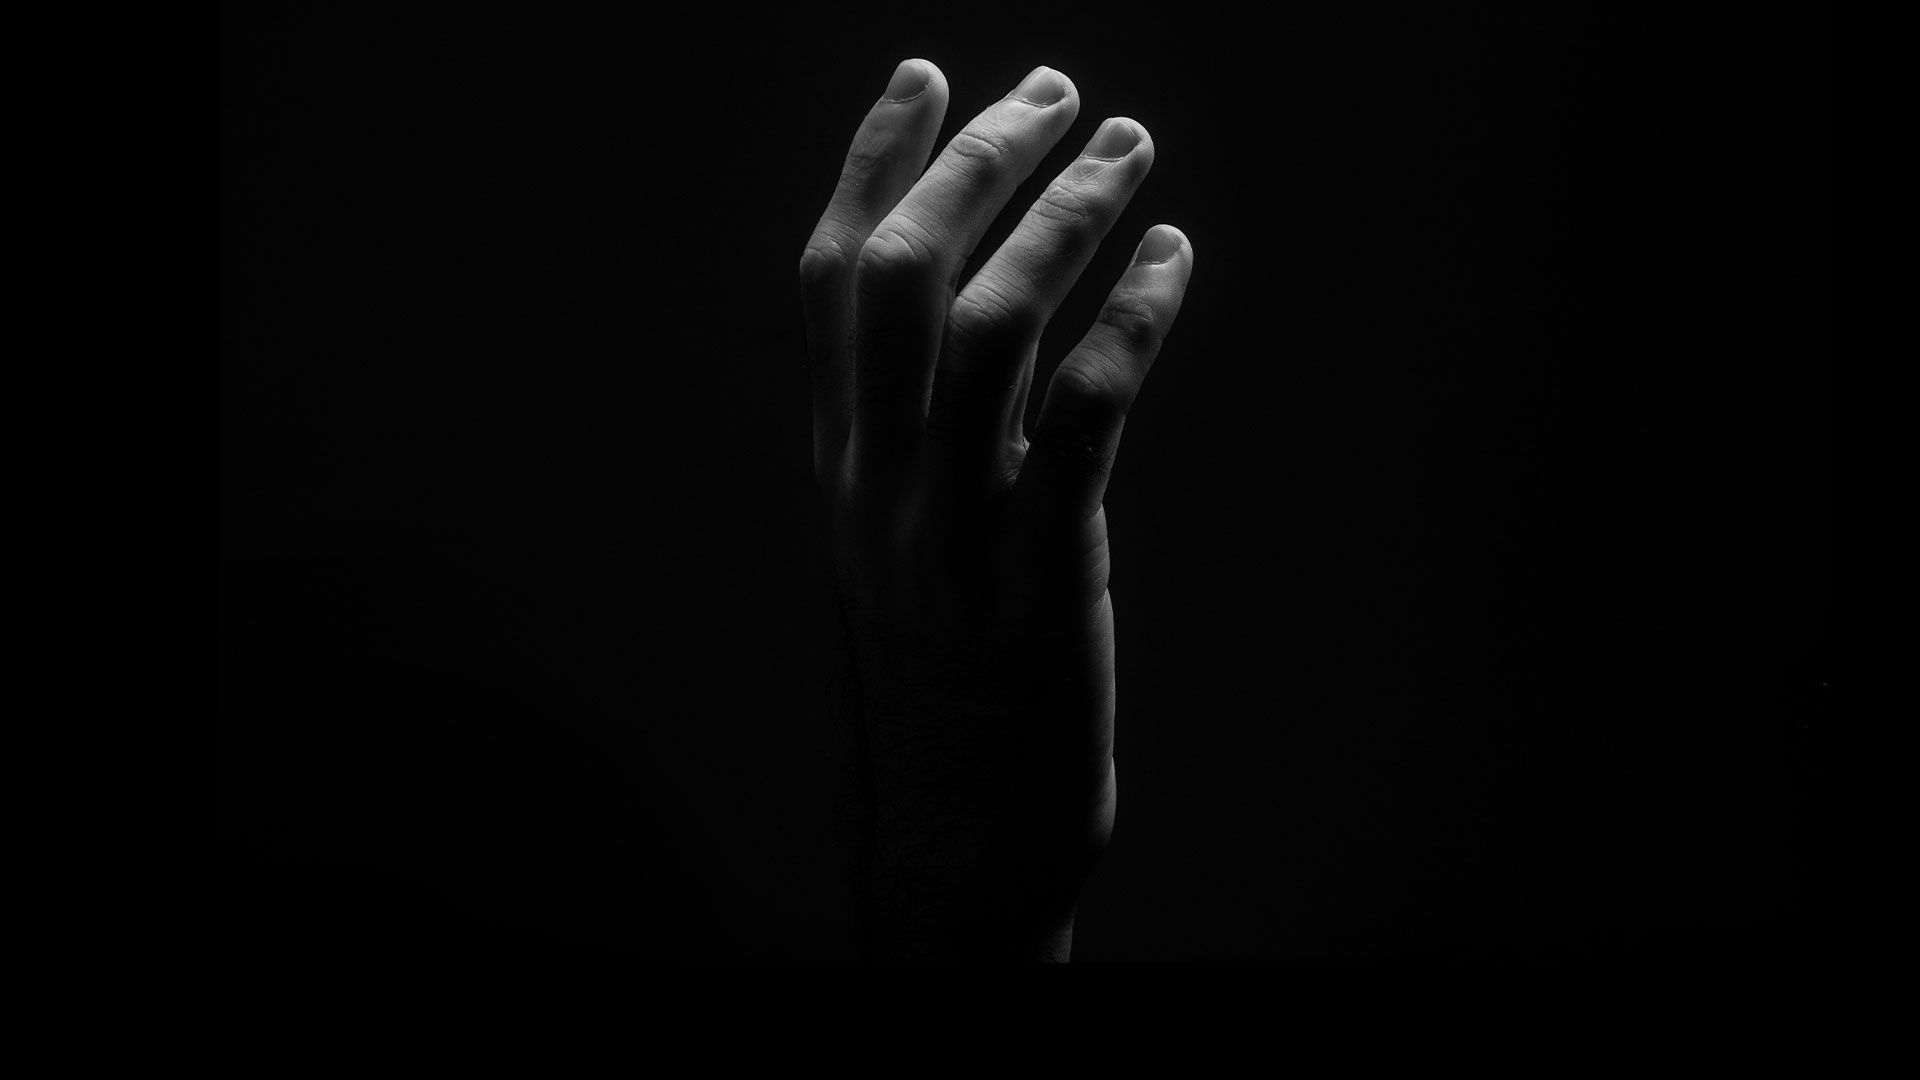 Promotional image for Что значит «не говорить лишнего» в молитве?